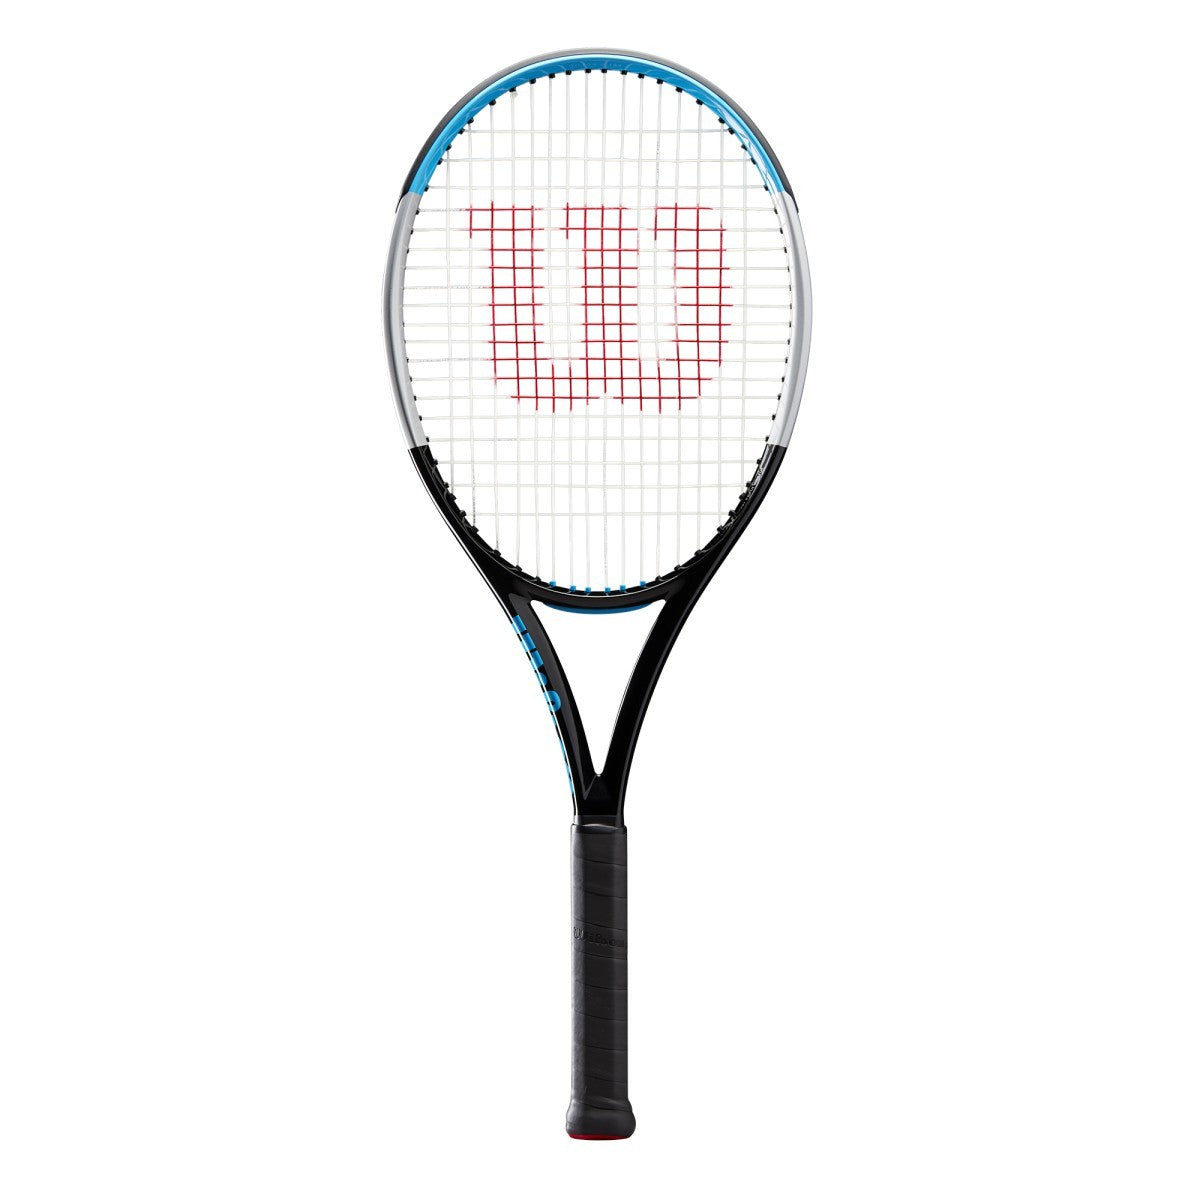 Wilson Ultra 100UL V3 Tennis Racquet